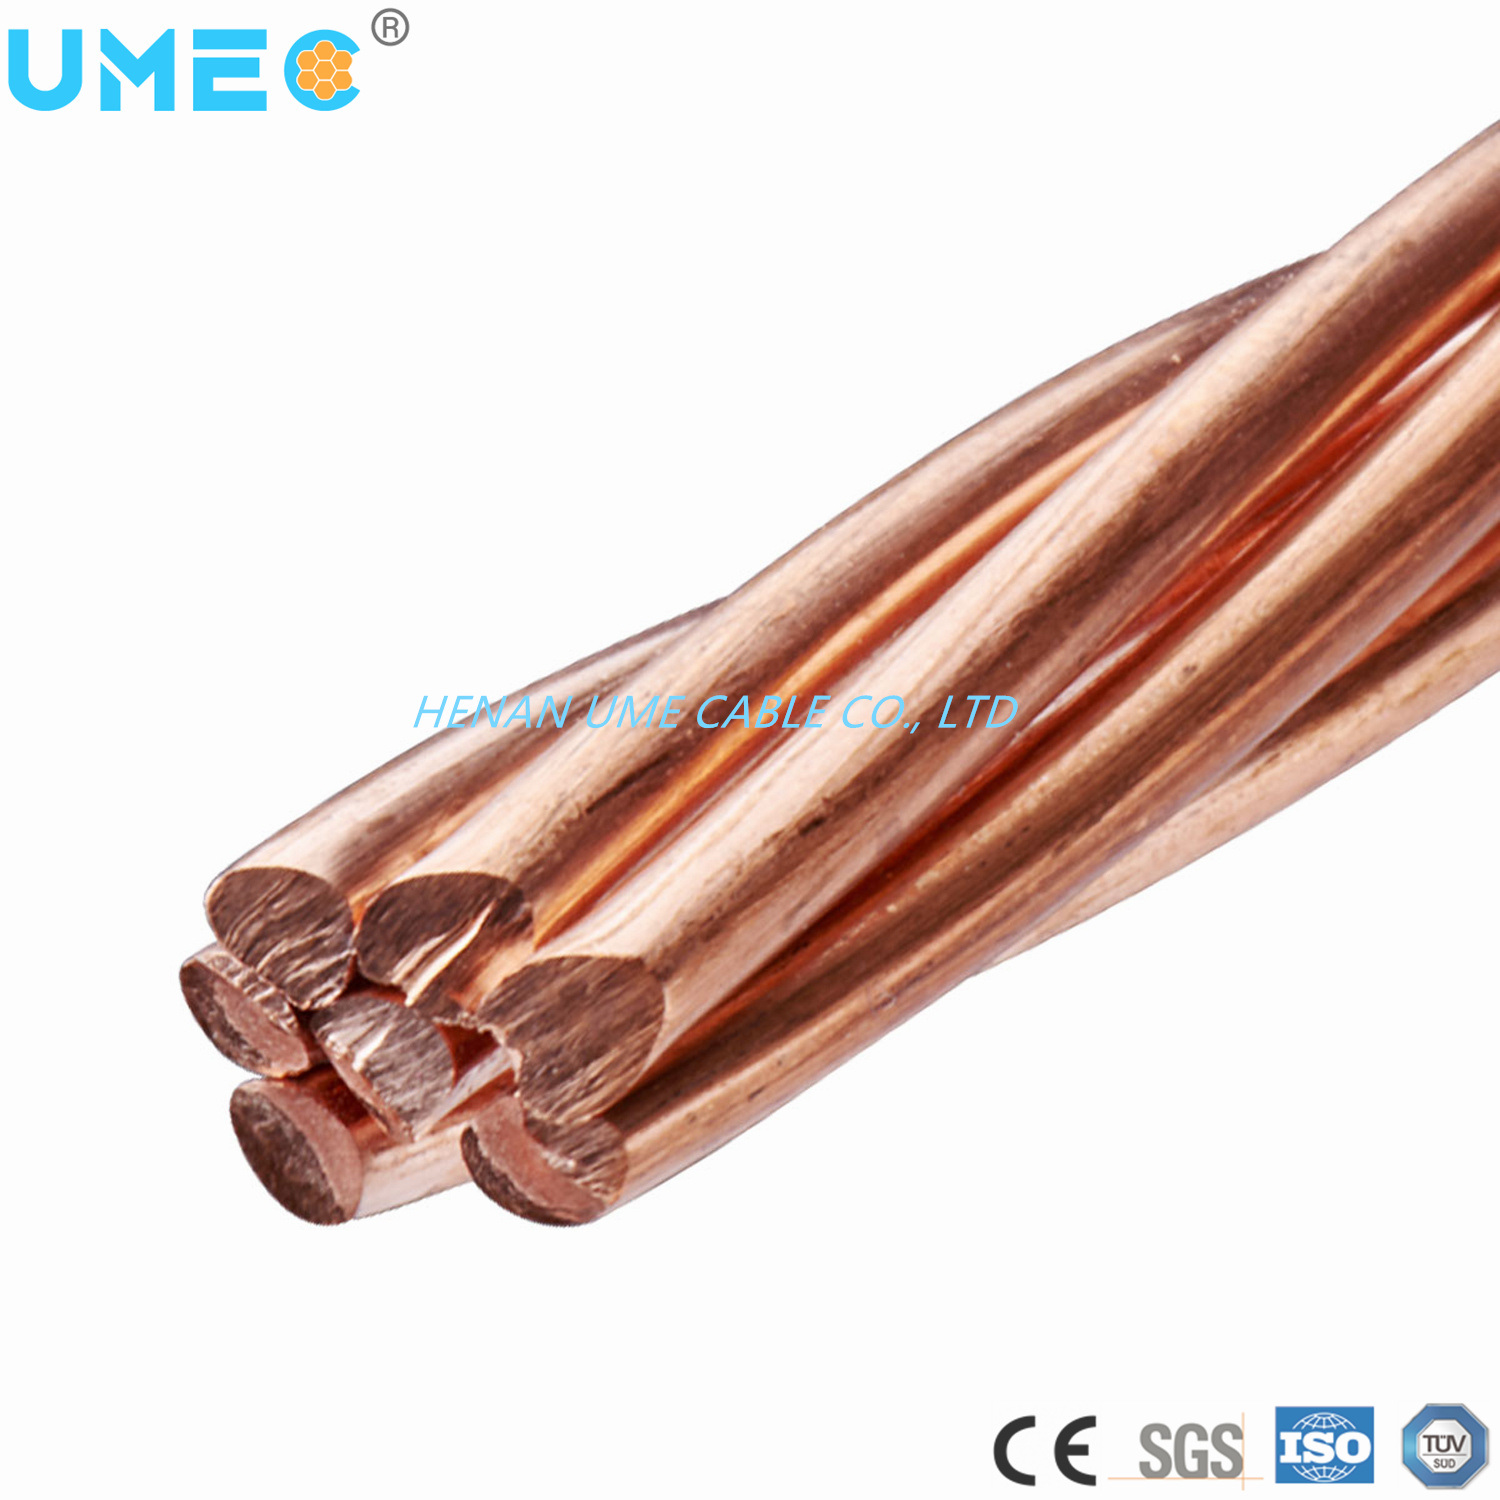 Distribution Line Round Wire Soft/Hard Drawn Copper Bare Copper Conductor